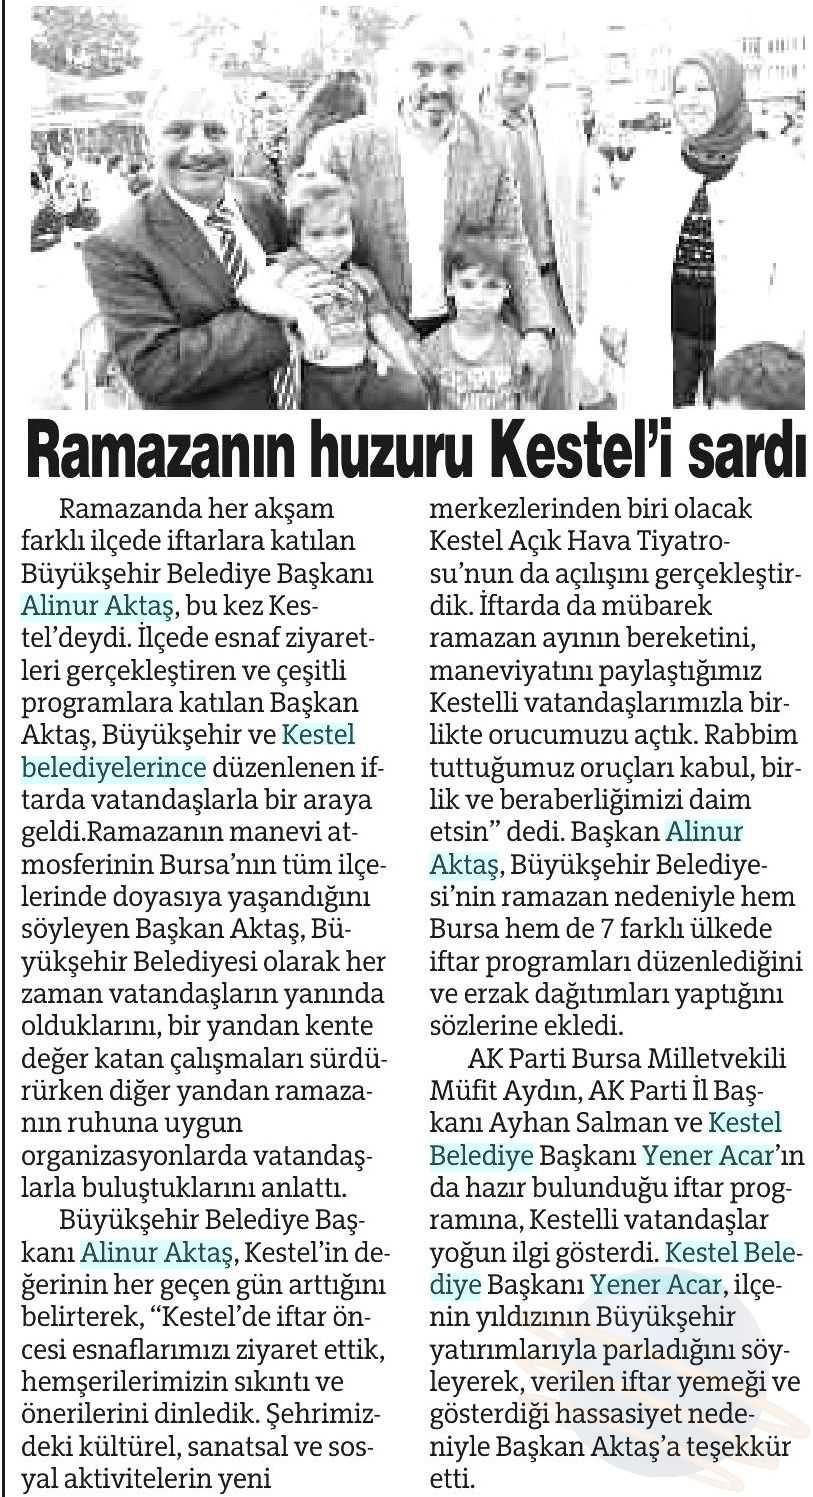 RAMAZANIN HUZURU KESTELI SARDI Yayın Adı : Bursa'da